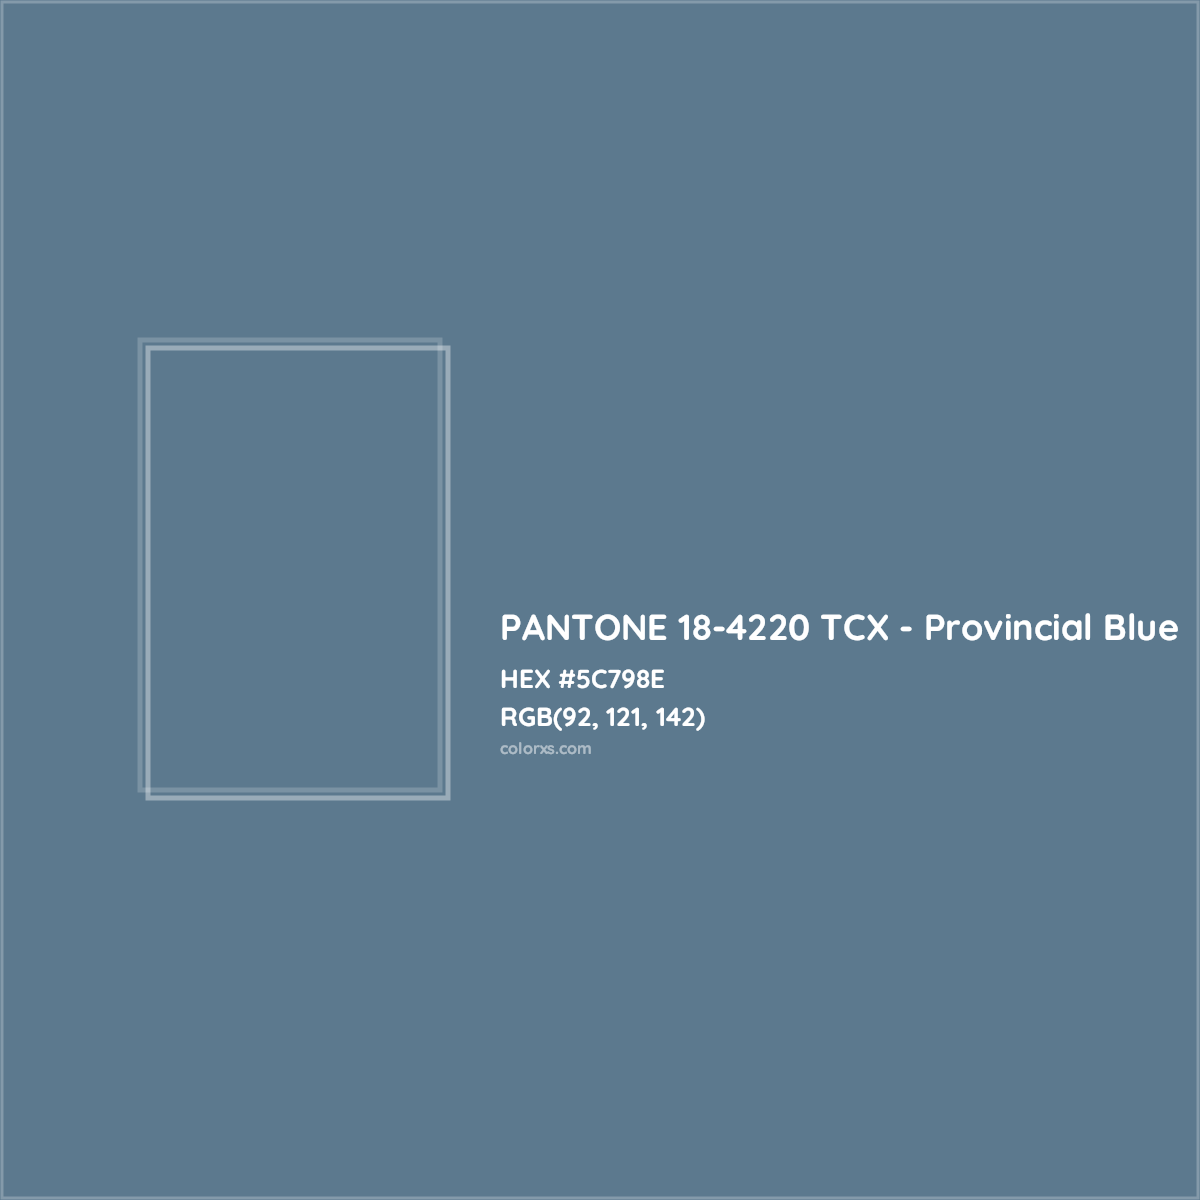 HEX #5C798E PANTONE 18-4220 TCX - Provincial Blue CMS Pantone TCX - Color Code